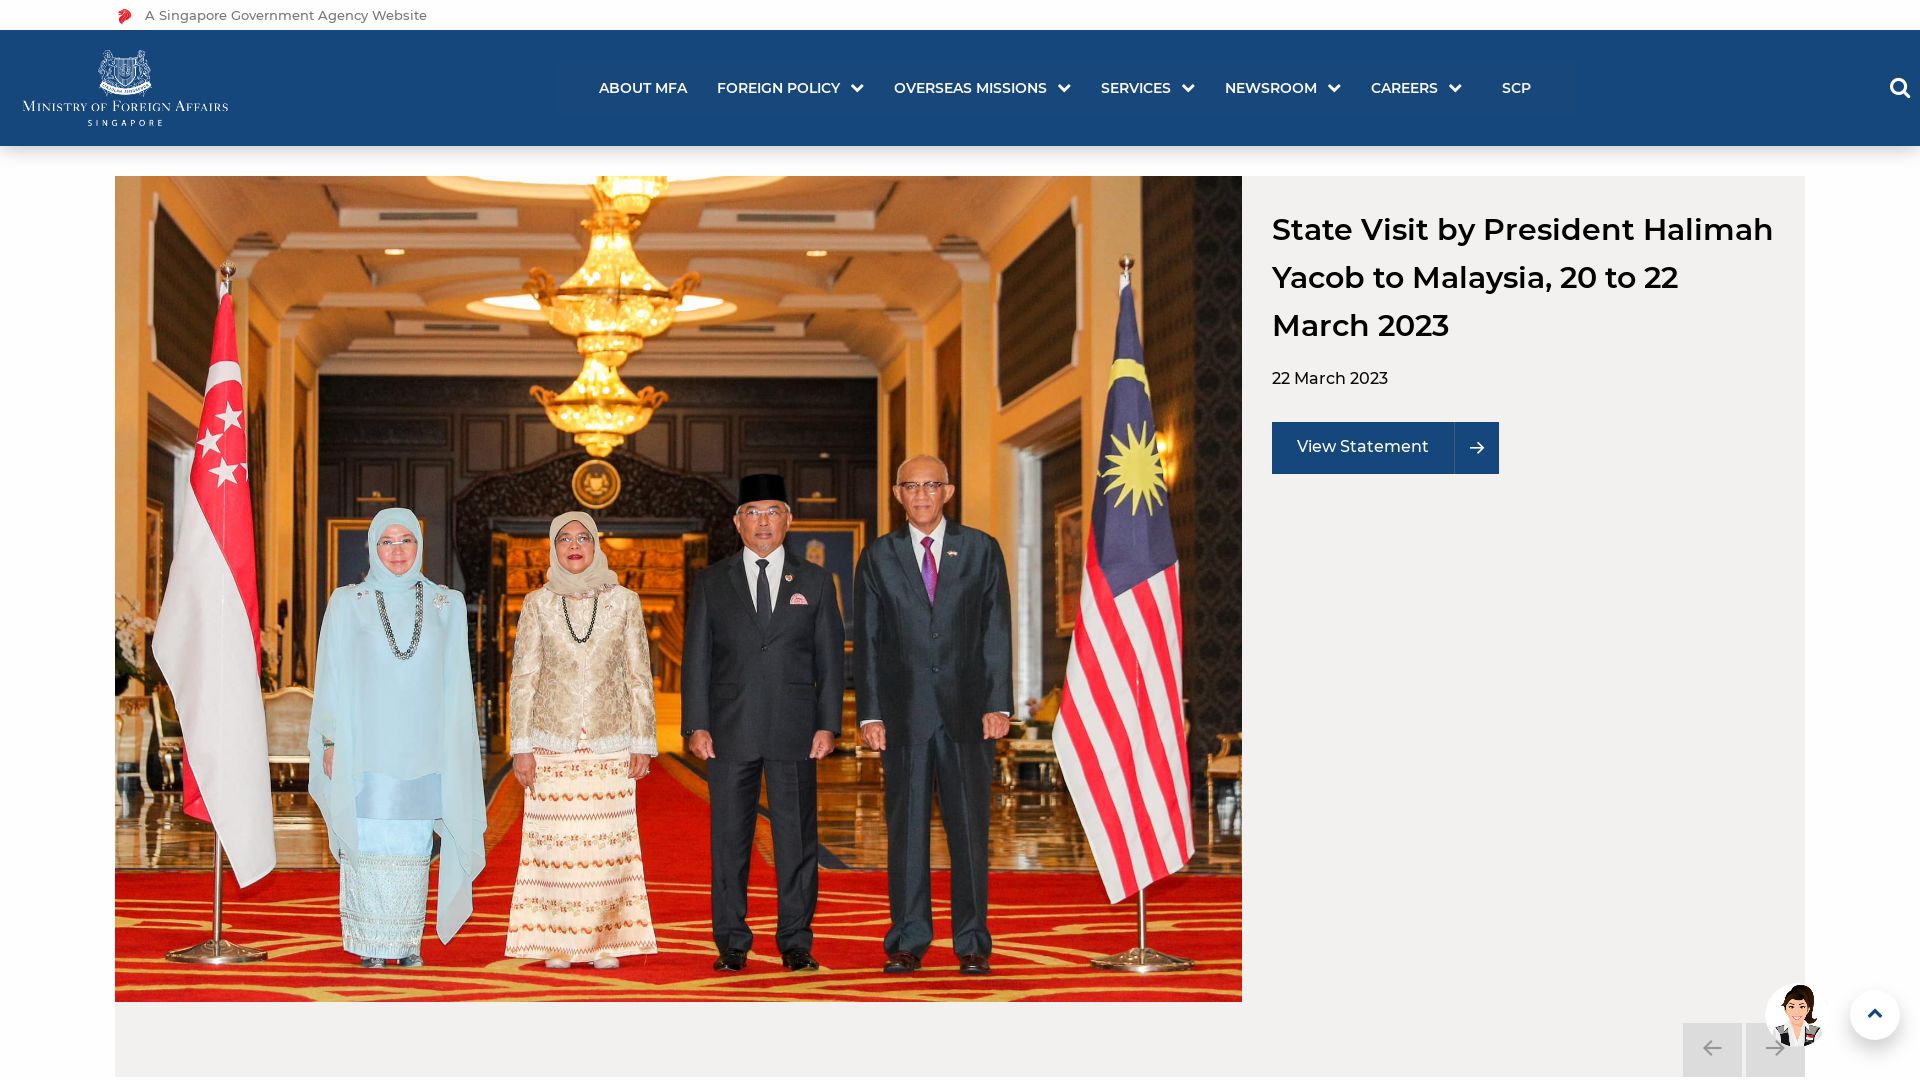 État du site web mfa.gov.sg est   EN LIGNE